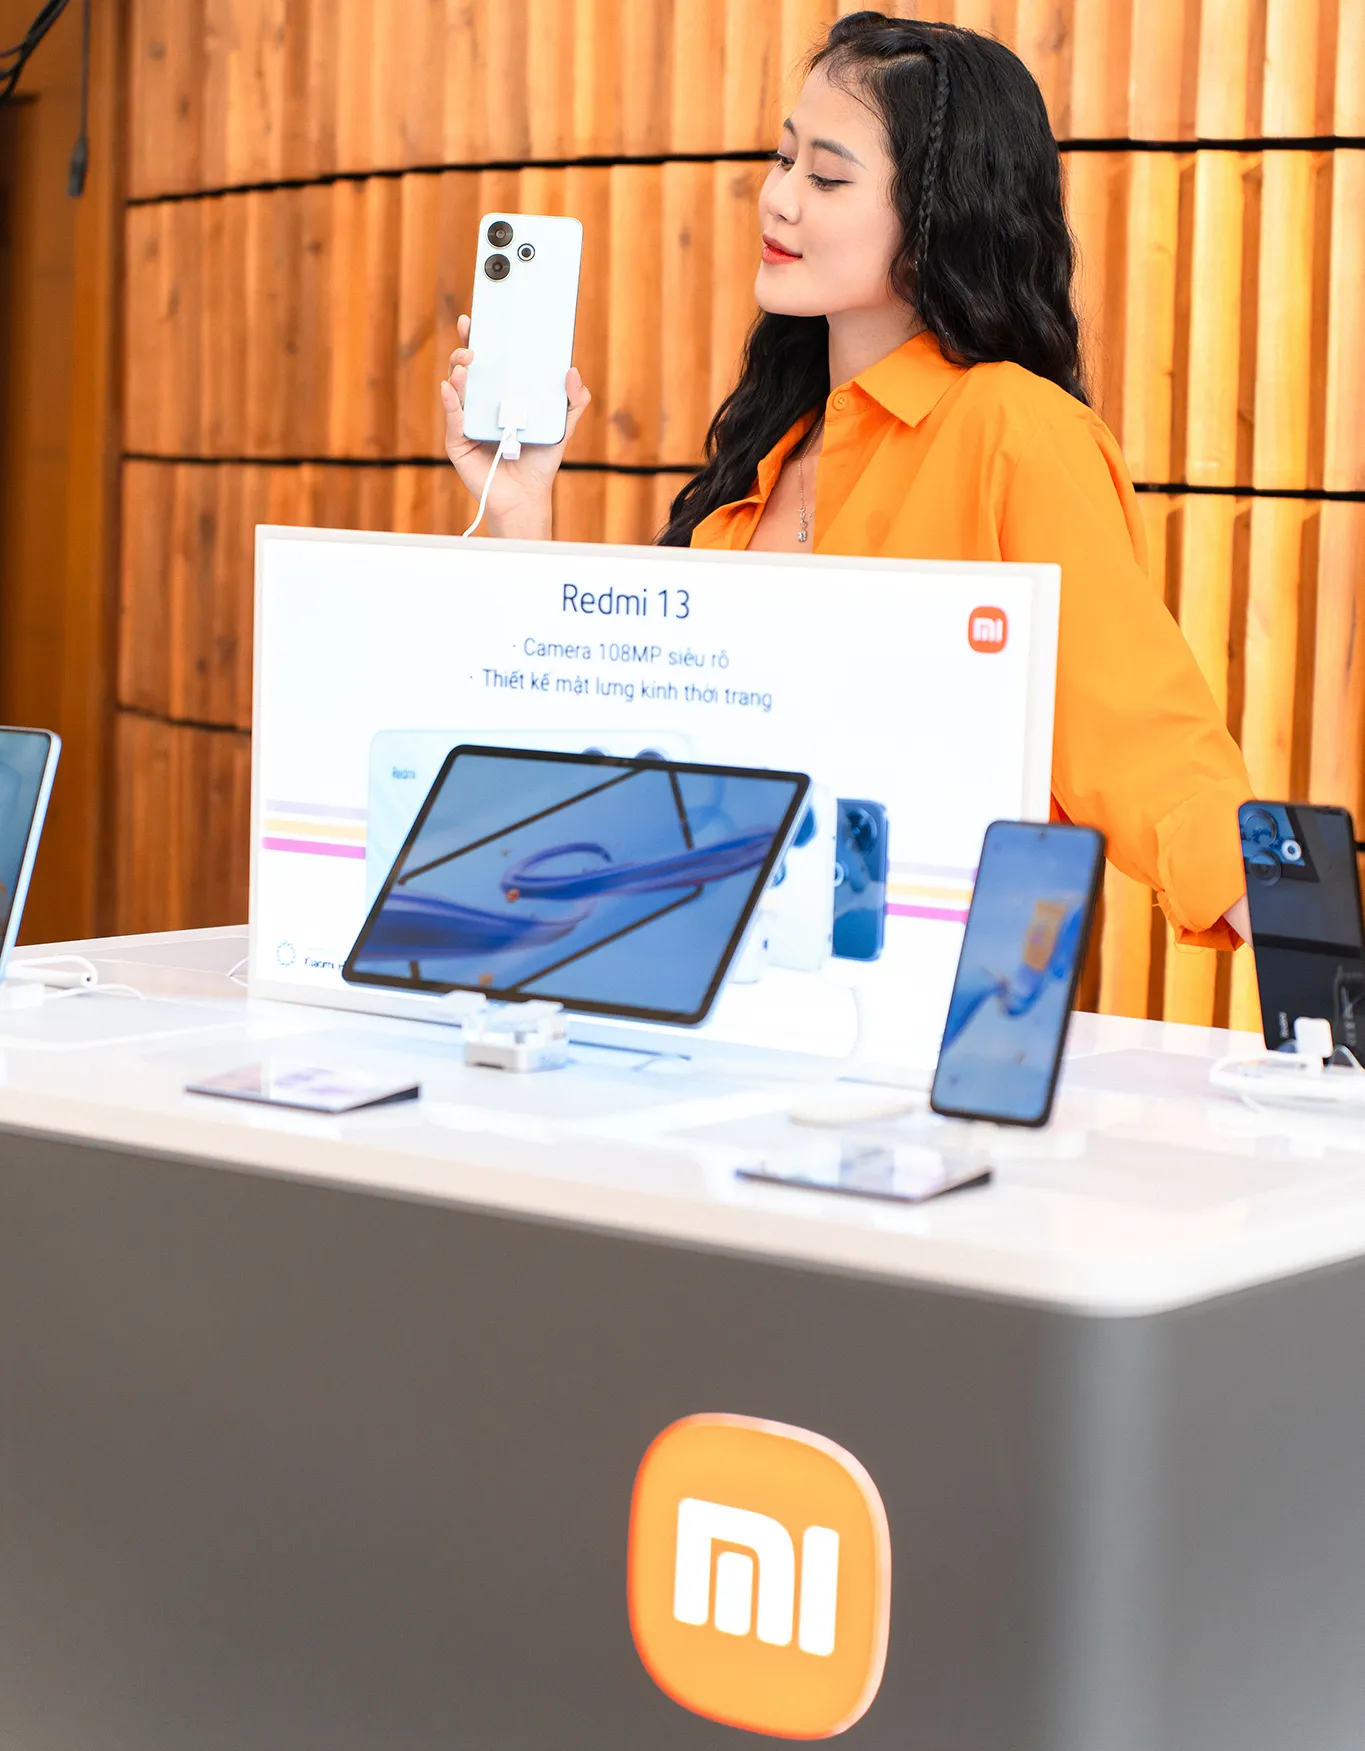 Thế Giới Di Động và Xiaomi Việt Nam hợp tác chiến lược mang Redmi 13 đến tay người dùng